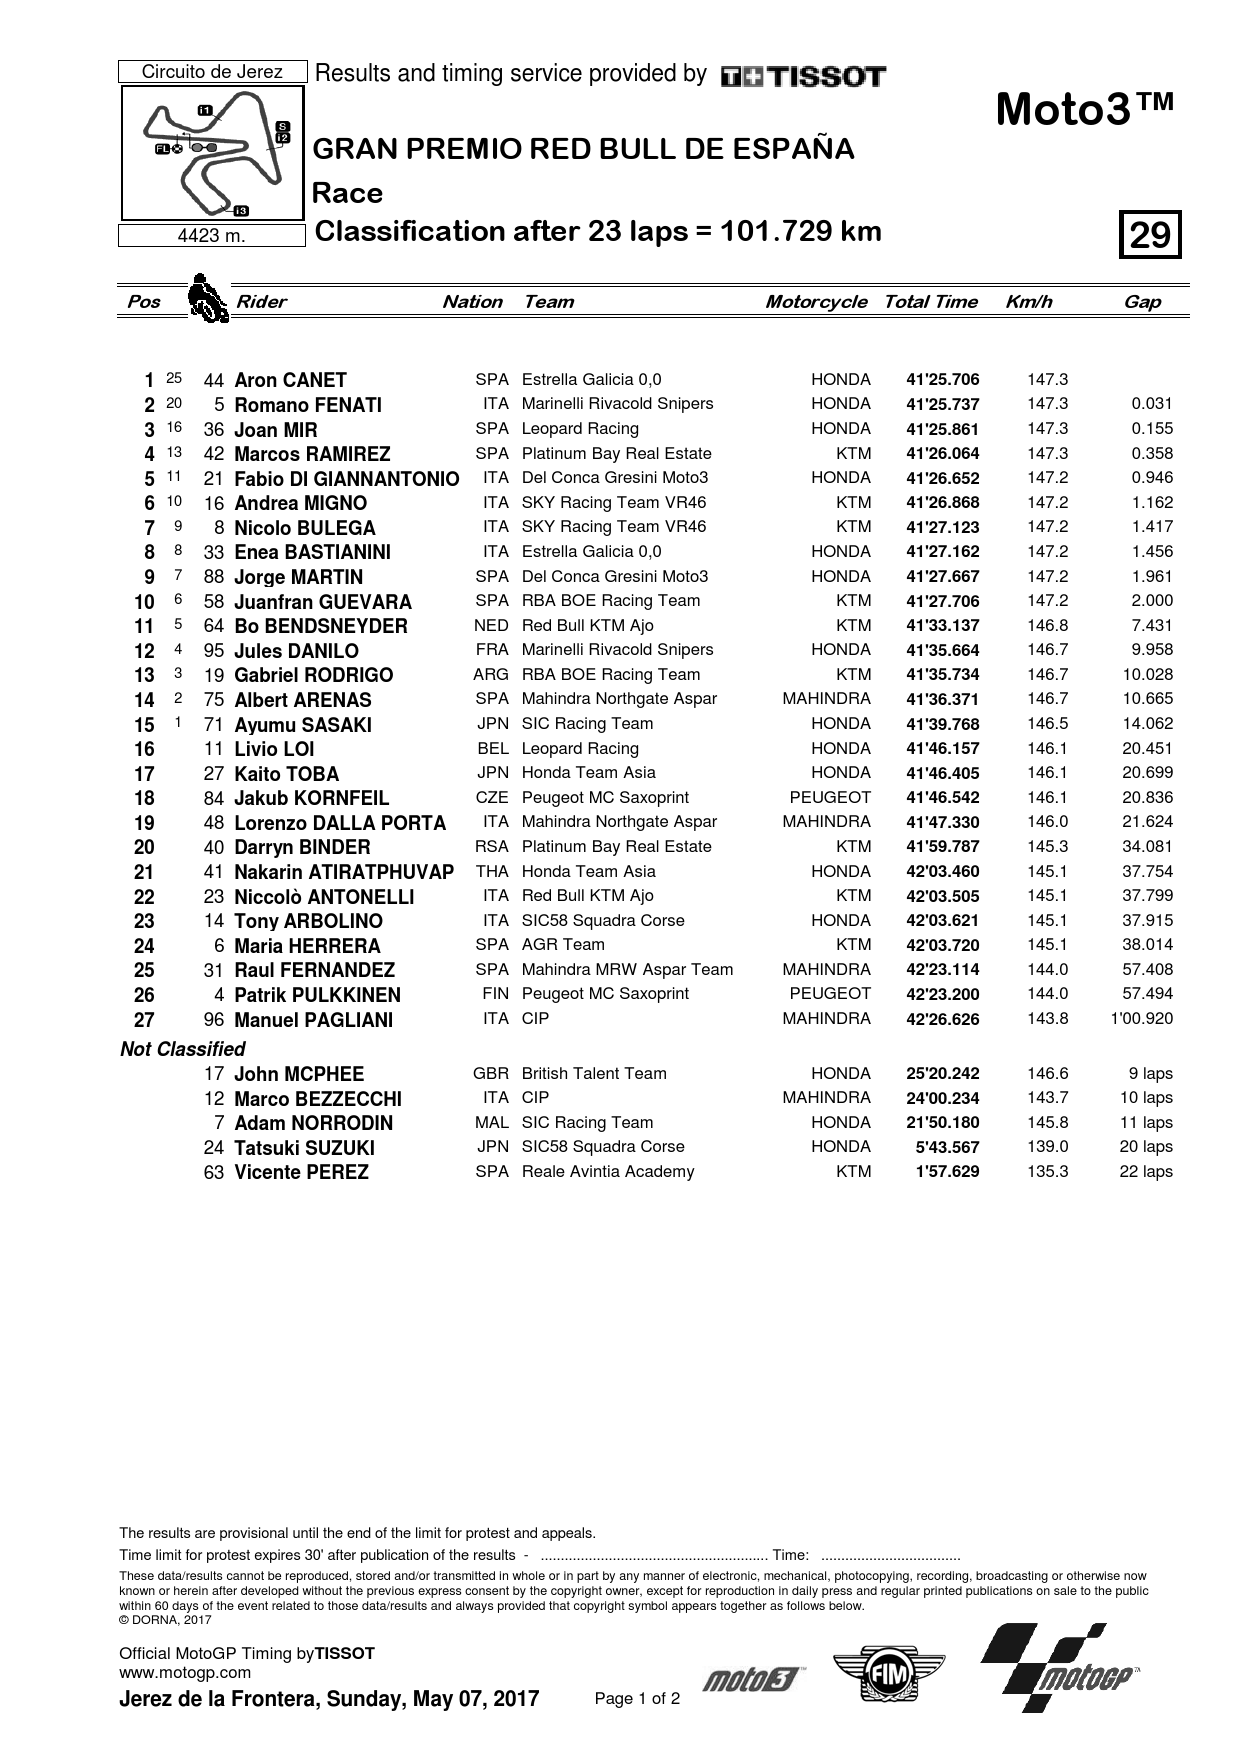 Результаты Гран-При Испании, Moto3